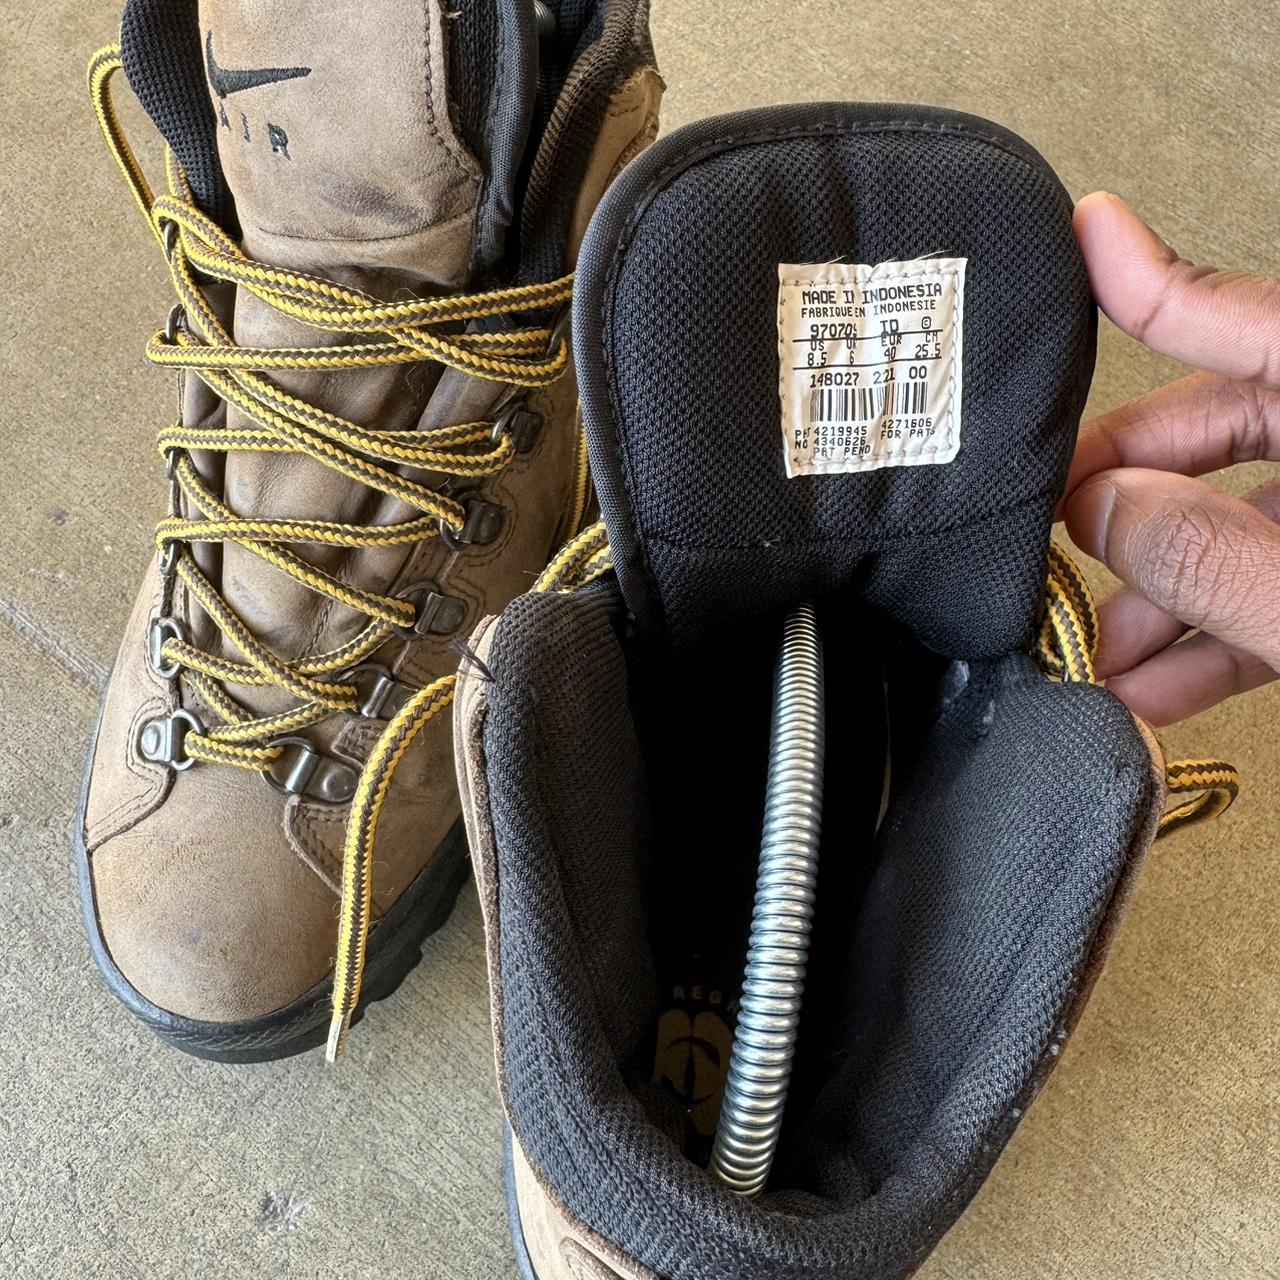 Vintage Nike ACG Combat Boots Size 8.5 Men’s,... - Depop